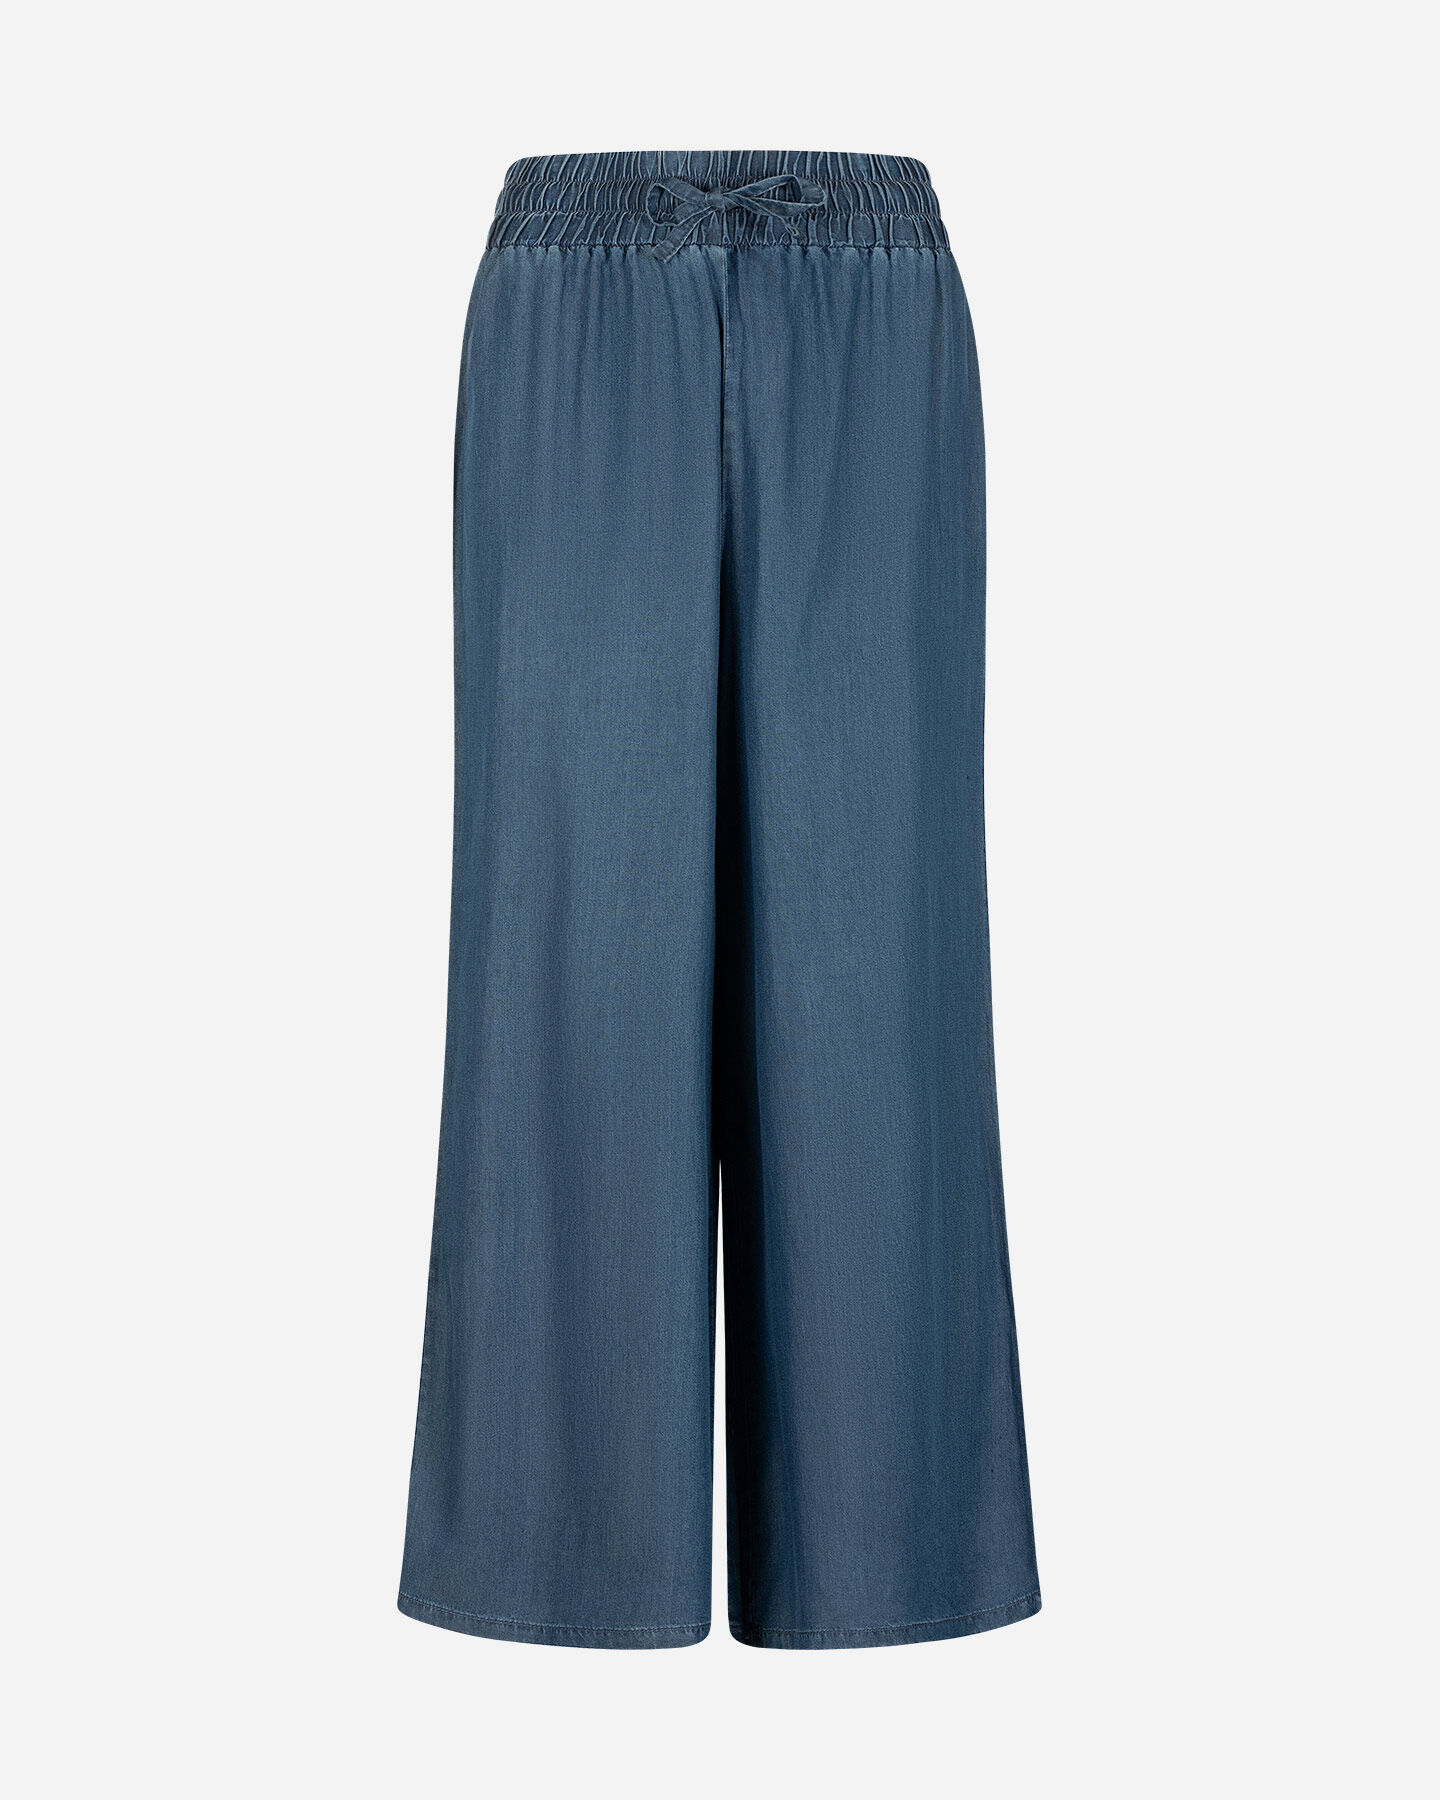  Pantalone DACK'S URBAN W S4129752|MD|XS scatto 0